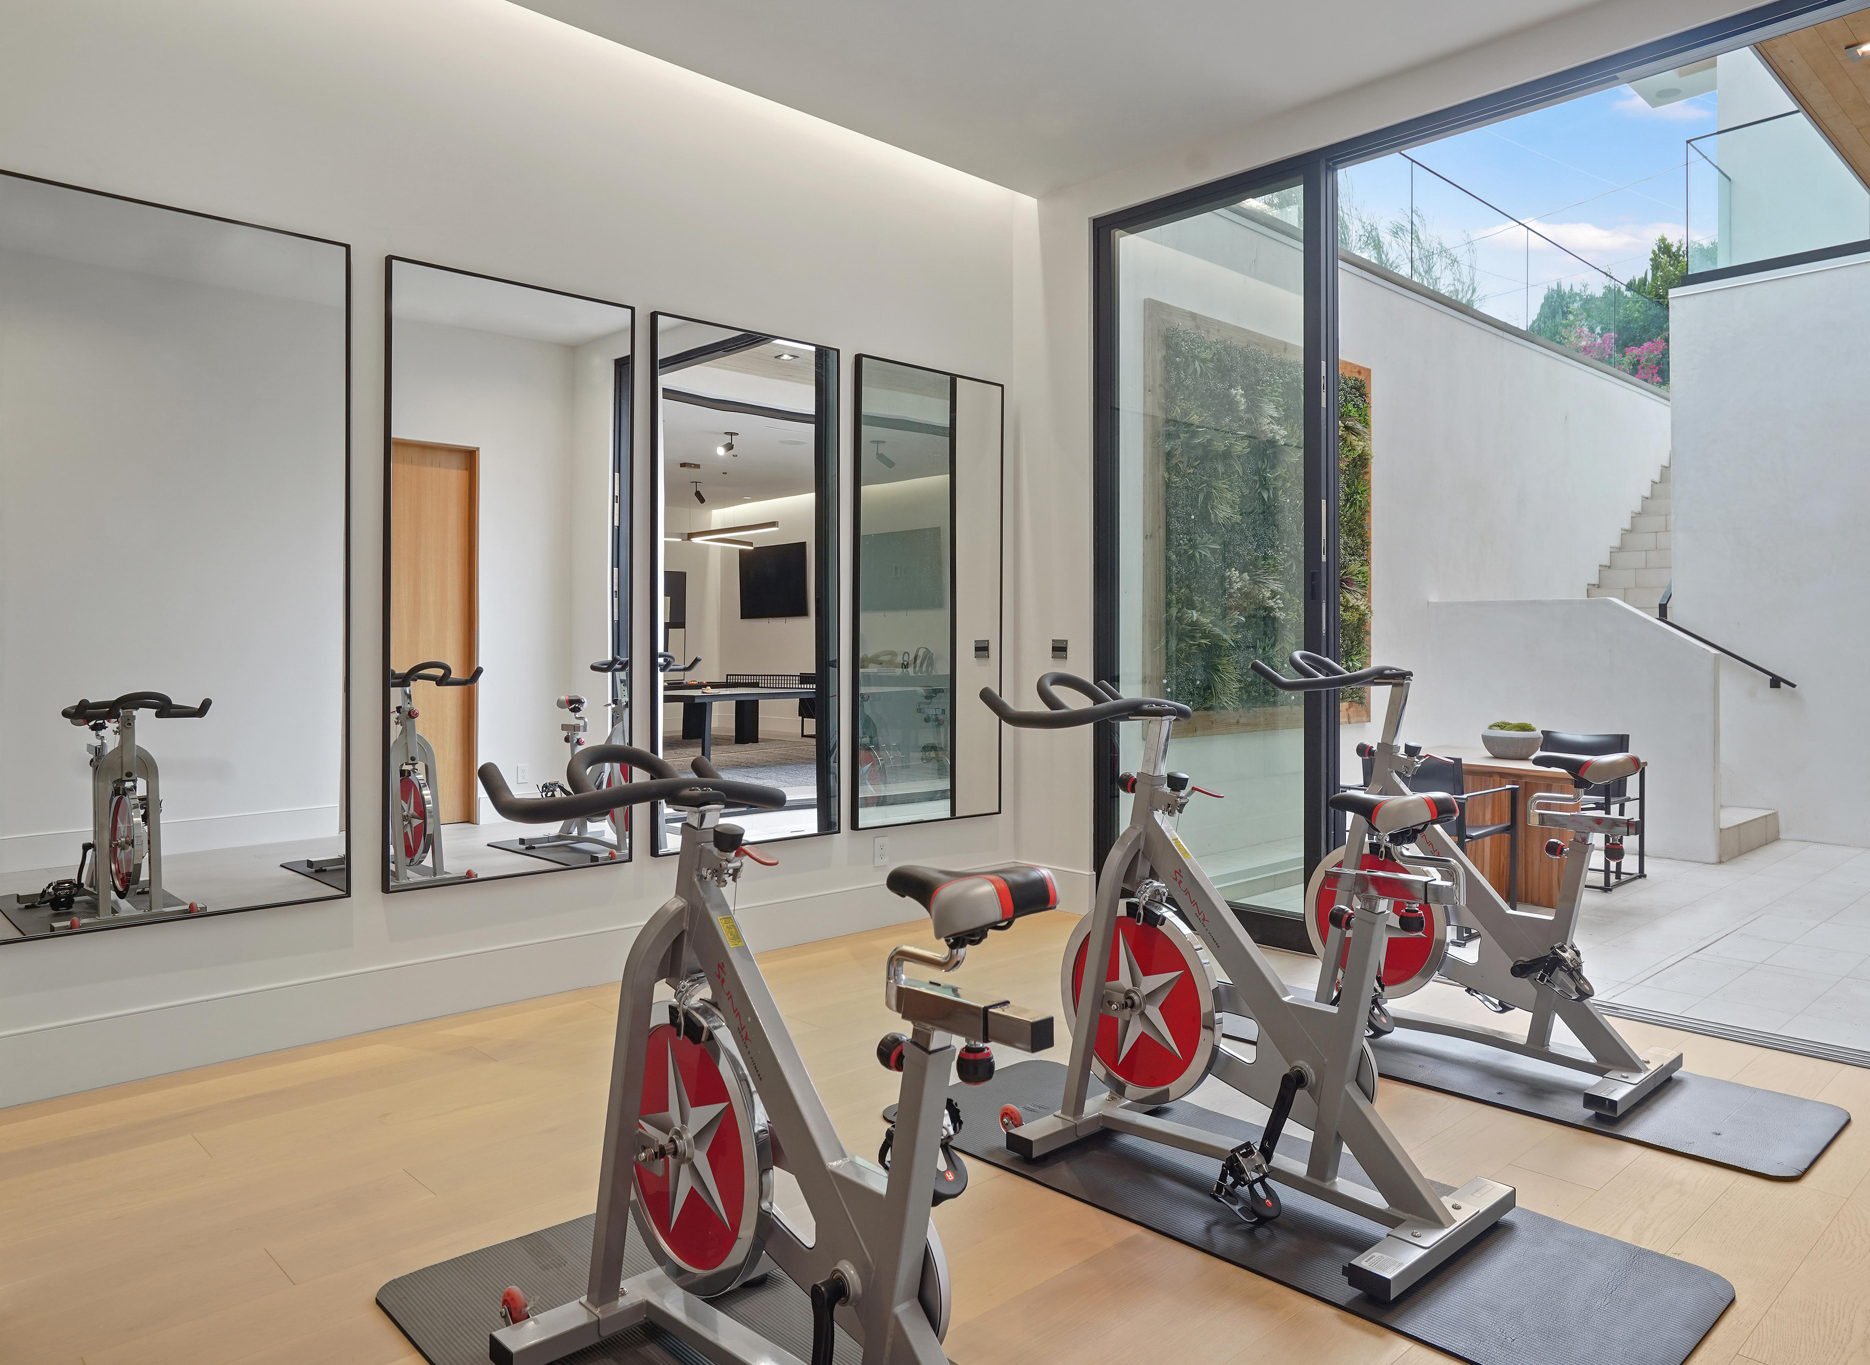 Home Gym Luxury Interior Design